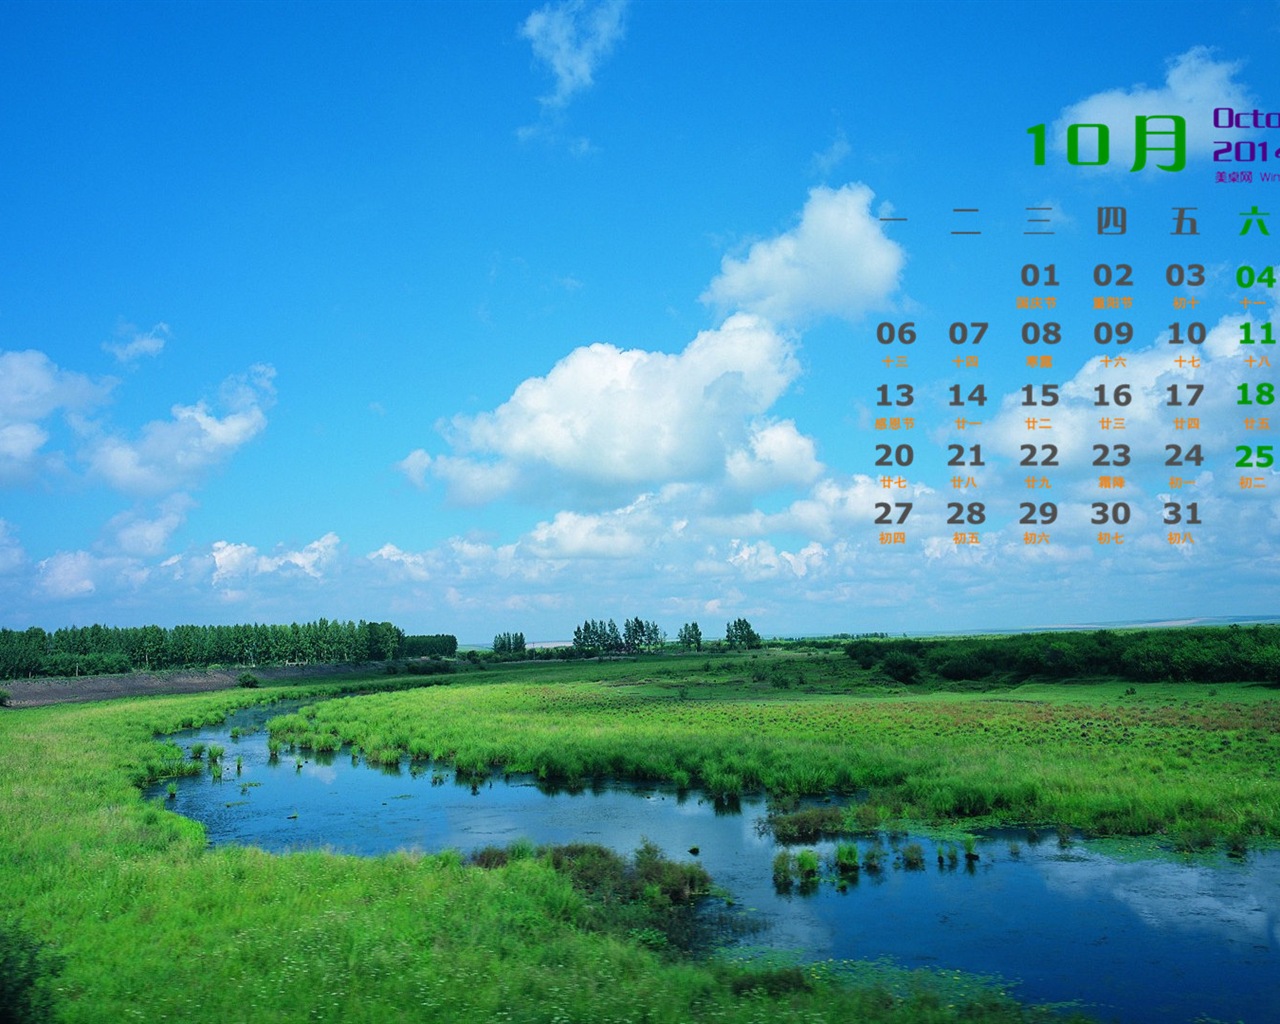 10 2014 wallpaper Calendario (1) #4 - 1280x1024